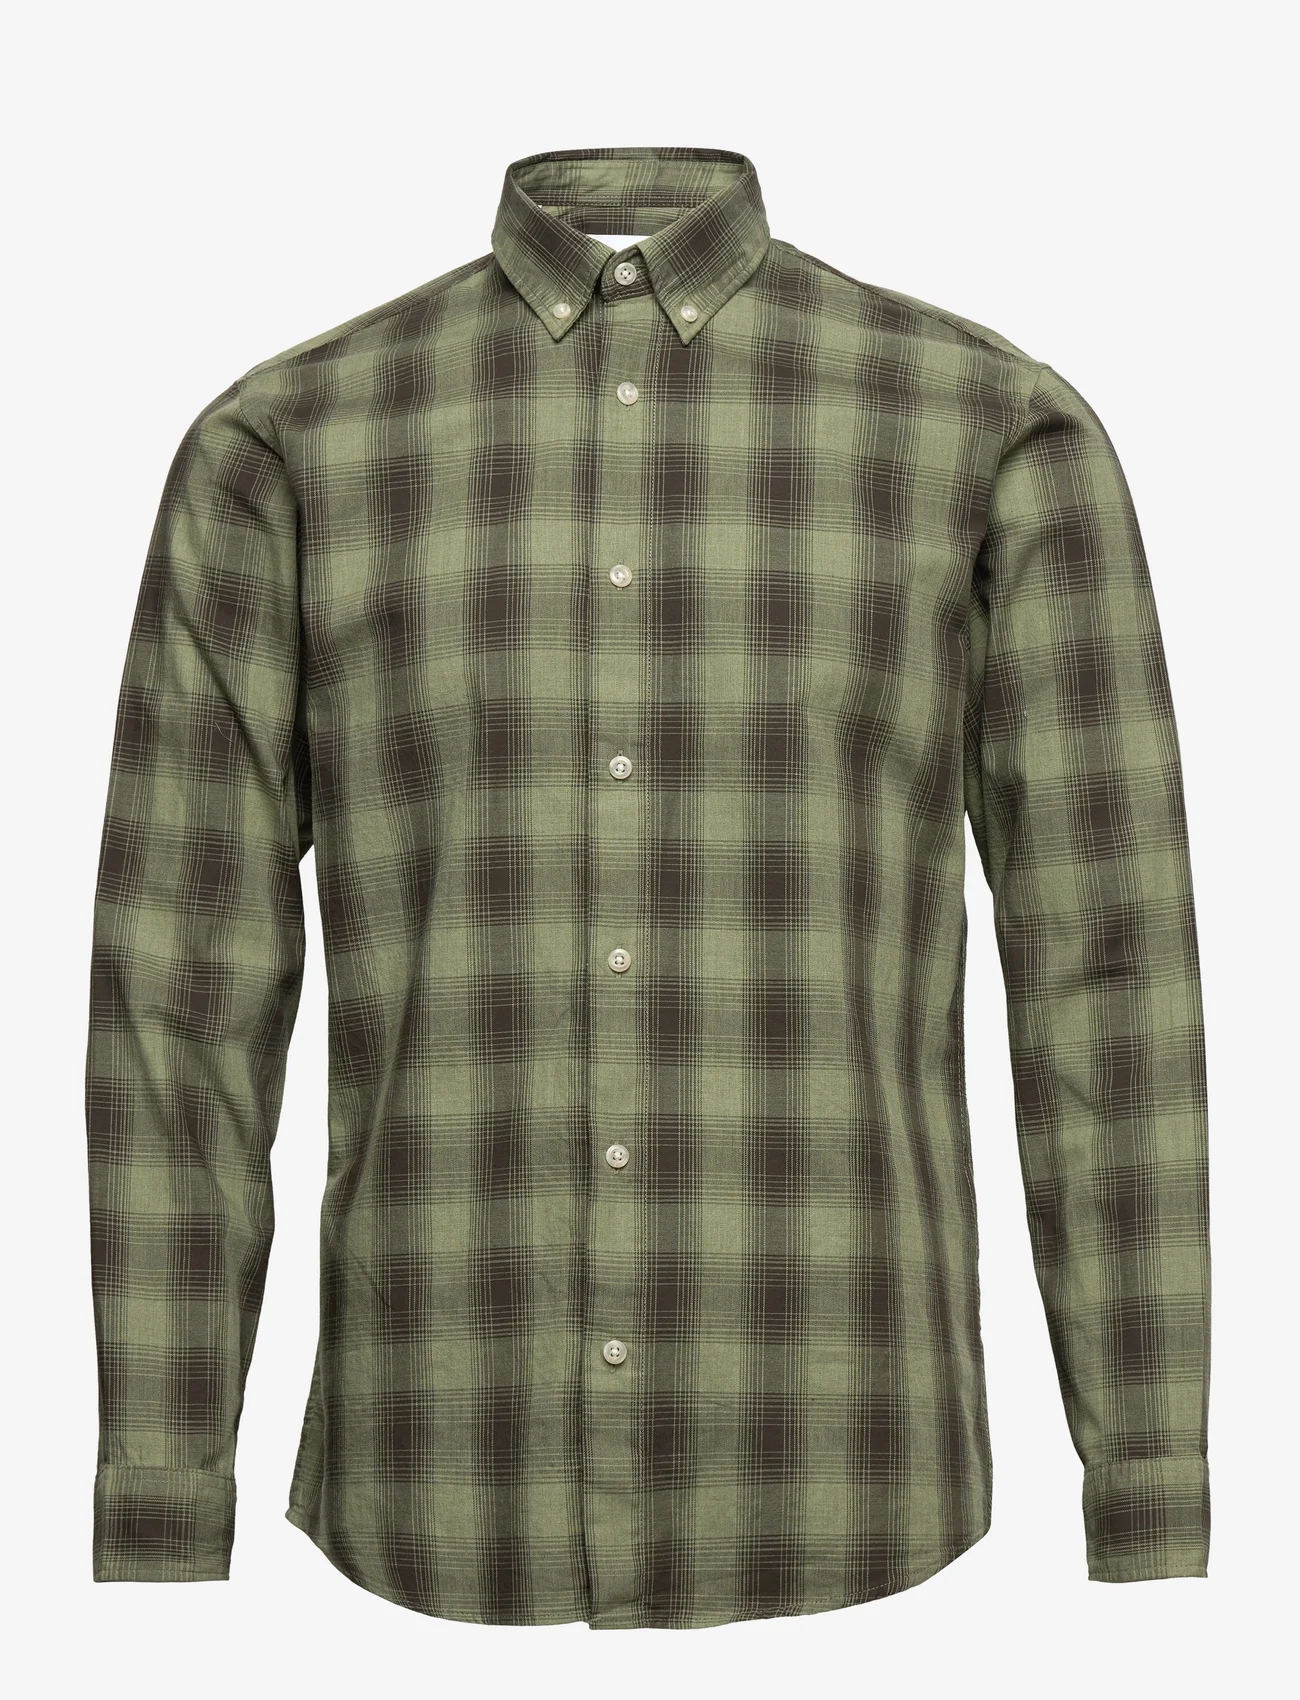 Selected Homme - SLHSLIMTHEO SHIRT LS - checkered shirts - deep lichen green - 0